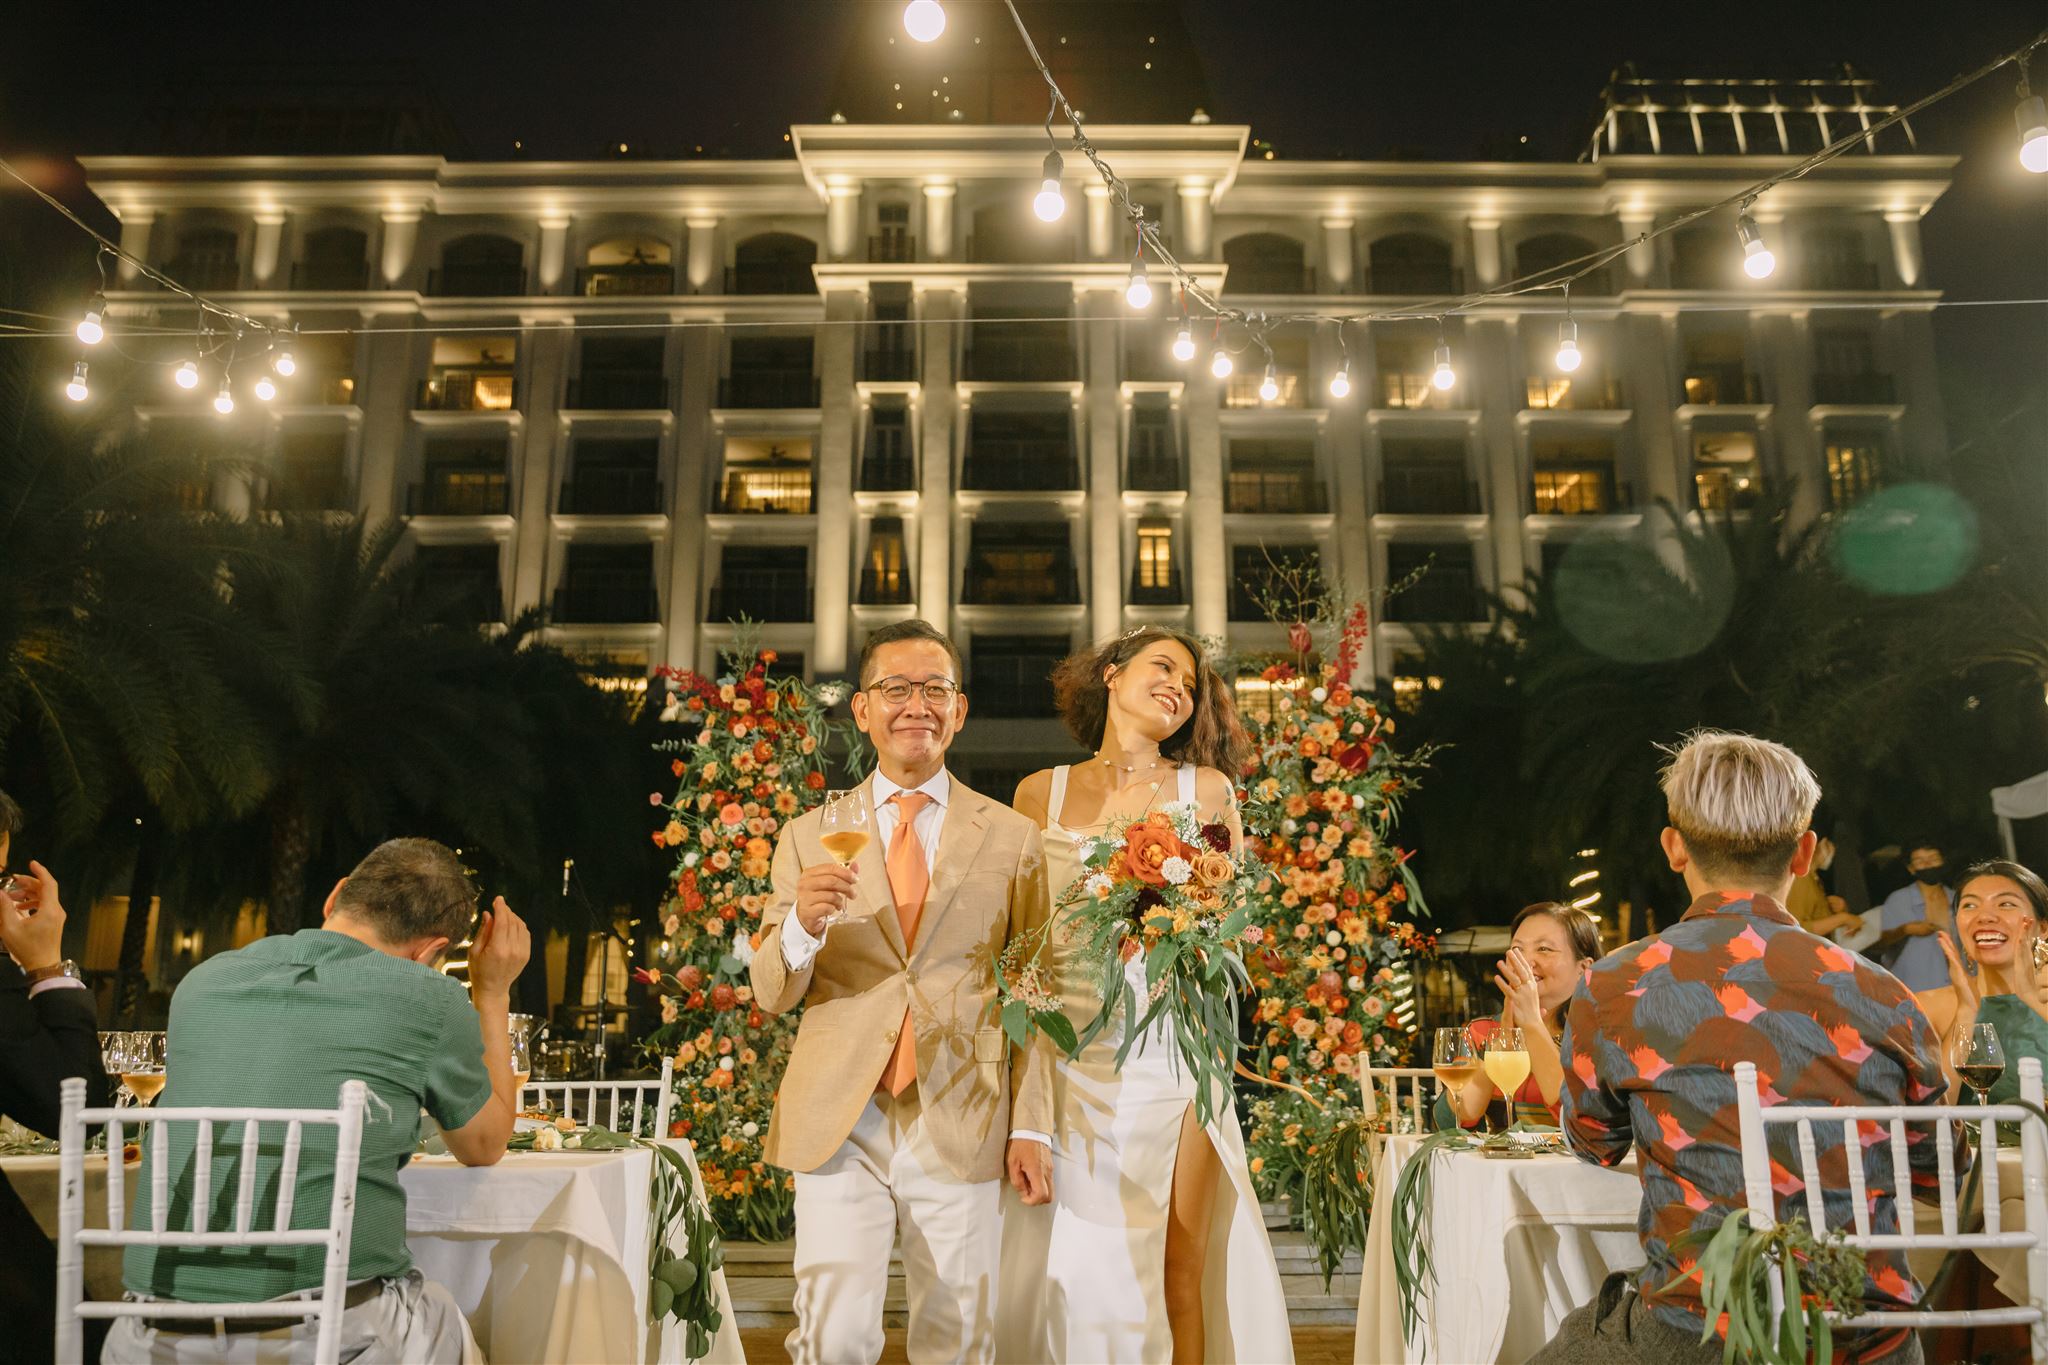 Trang + Hoàng’s Wedding Ceremony | Tổ chức tiệc cưới ấm cúng bên bờ sông cùng Mia Sài Gòn